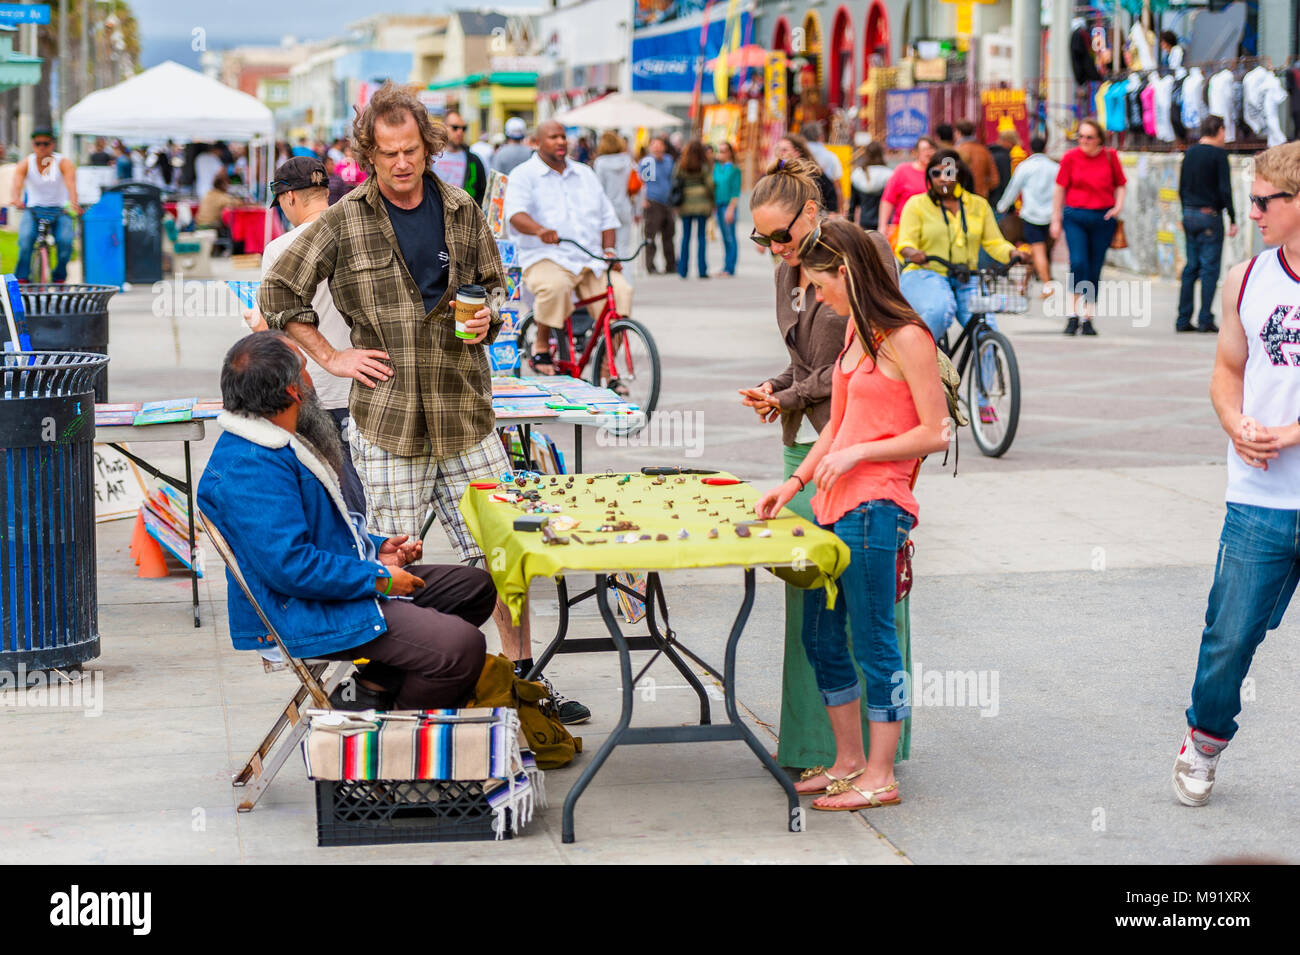 Du marché et des personnes à la célèbre promenade de Venice Beach en Californie, USA Banque D'Images